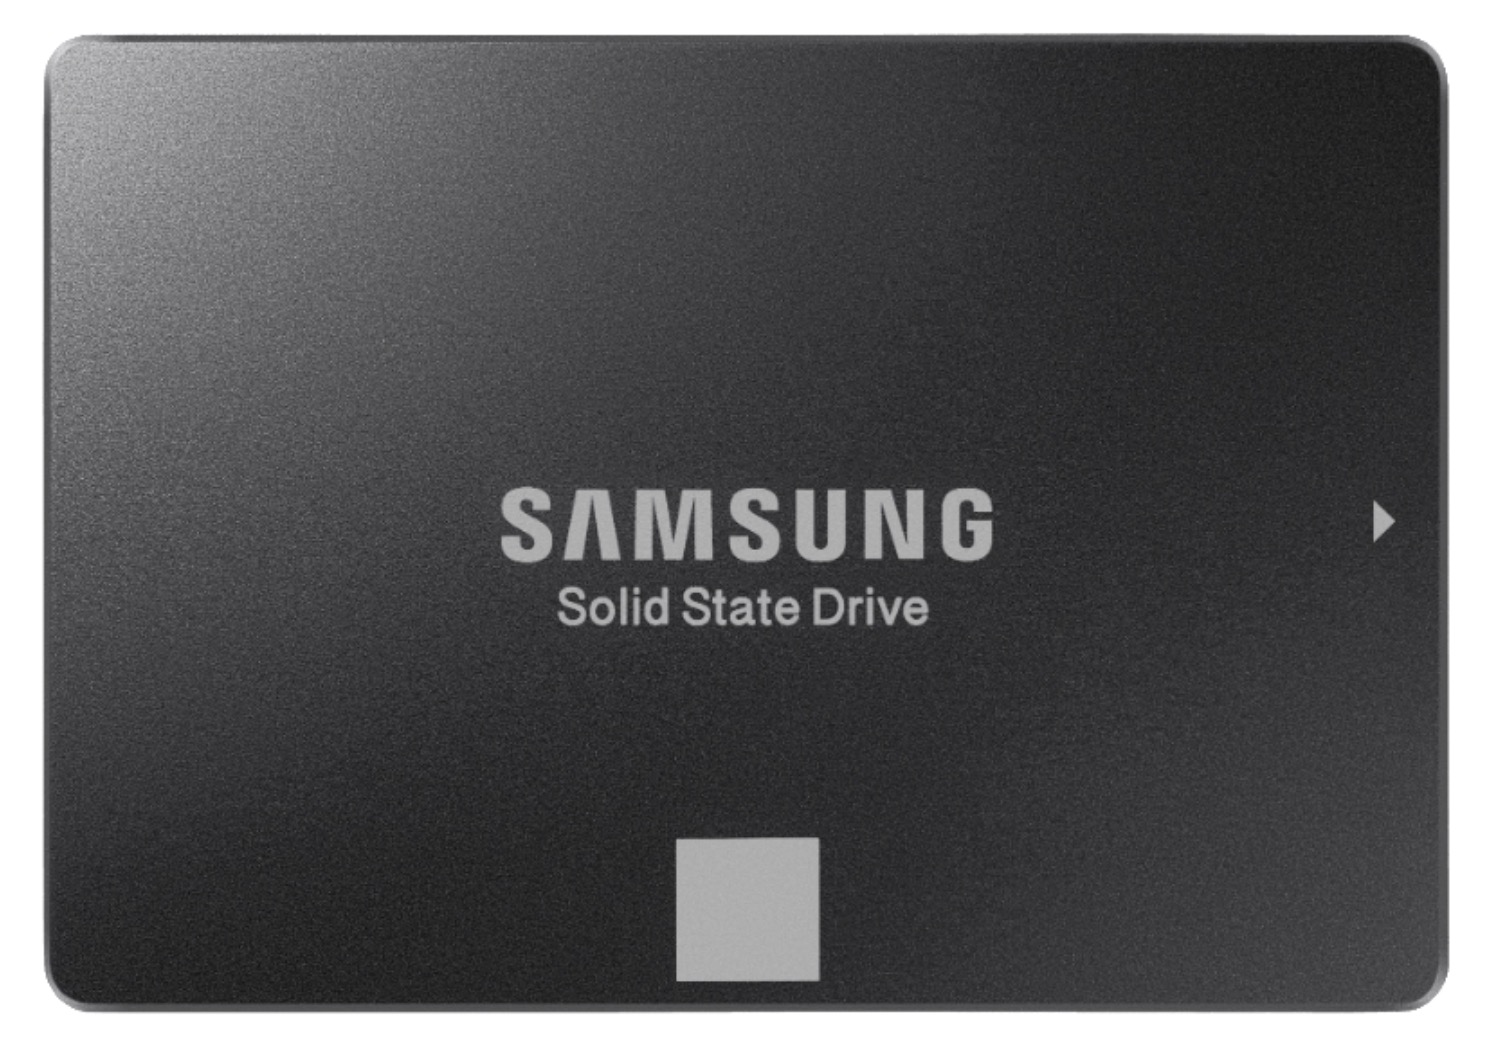 Geht noch: SAMSUNG 860 EVO Basic 1 TB SSD für nur 85,- Euro inkl. Versand